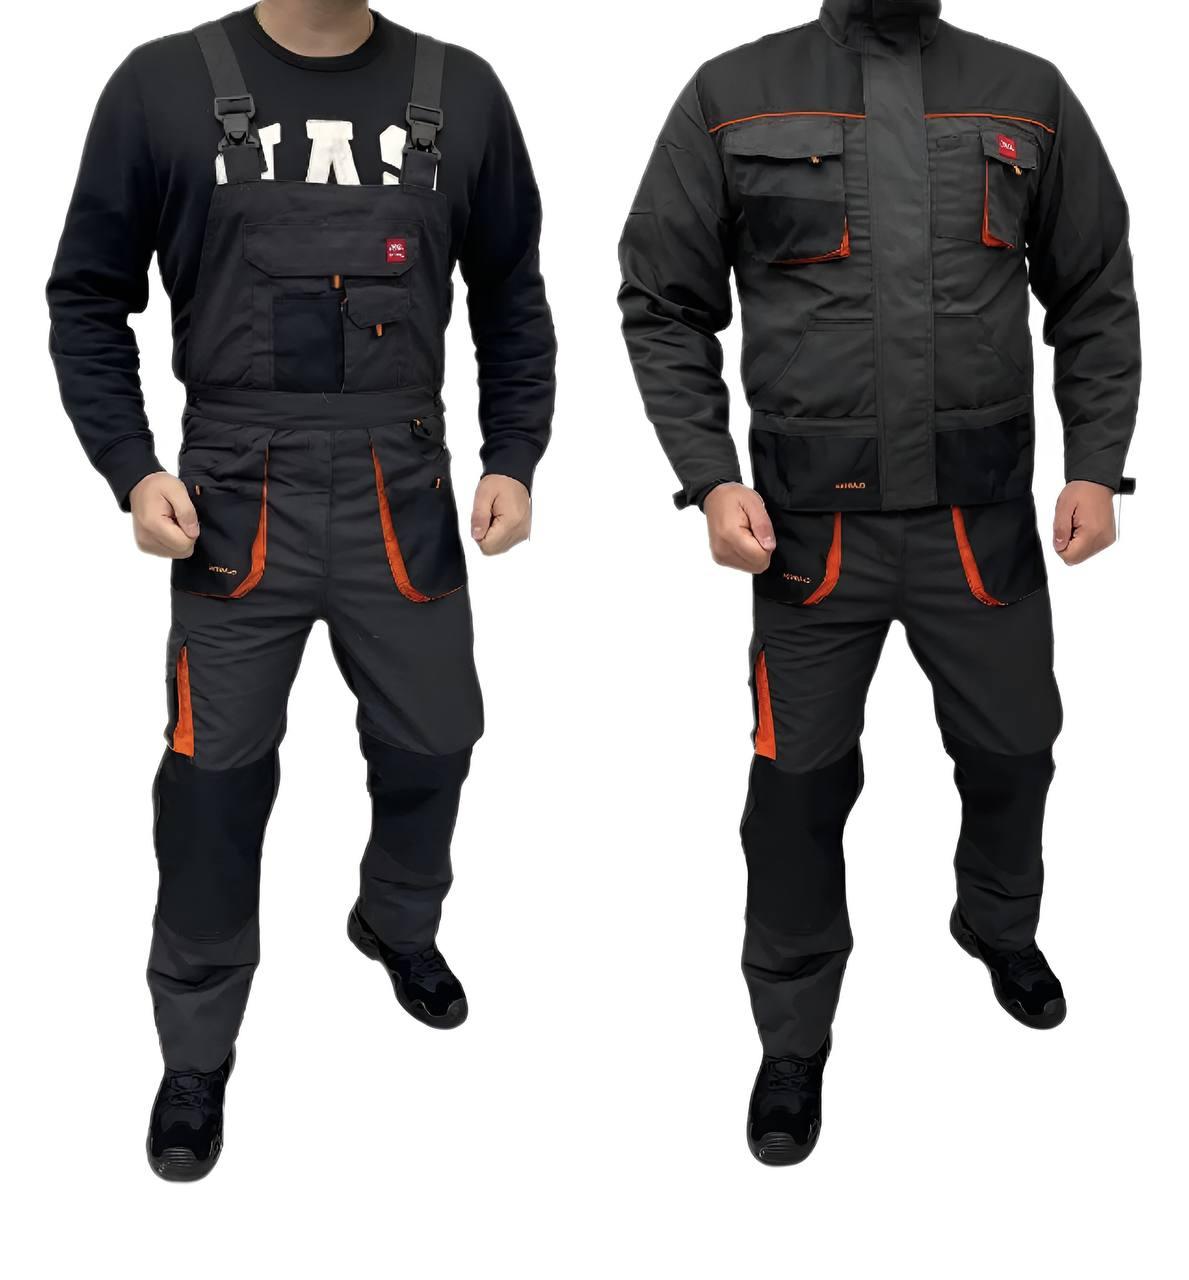 Робочий костюм CLASSIC  ,спецодяг,роба,куртка та напівкомбінезон,Польща , форма для працівників якісна